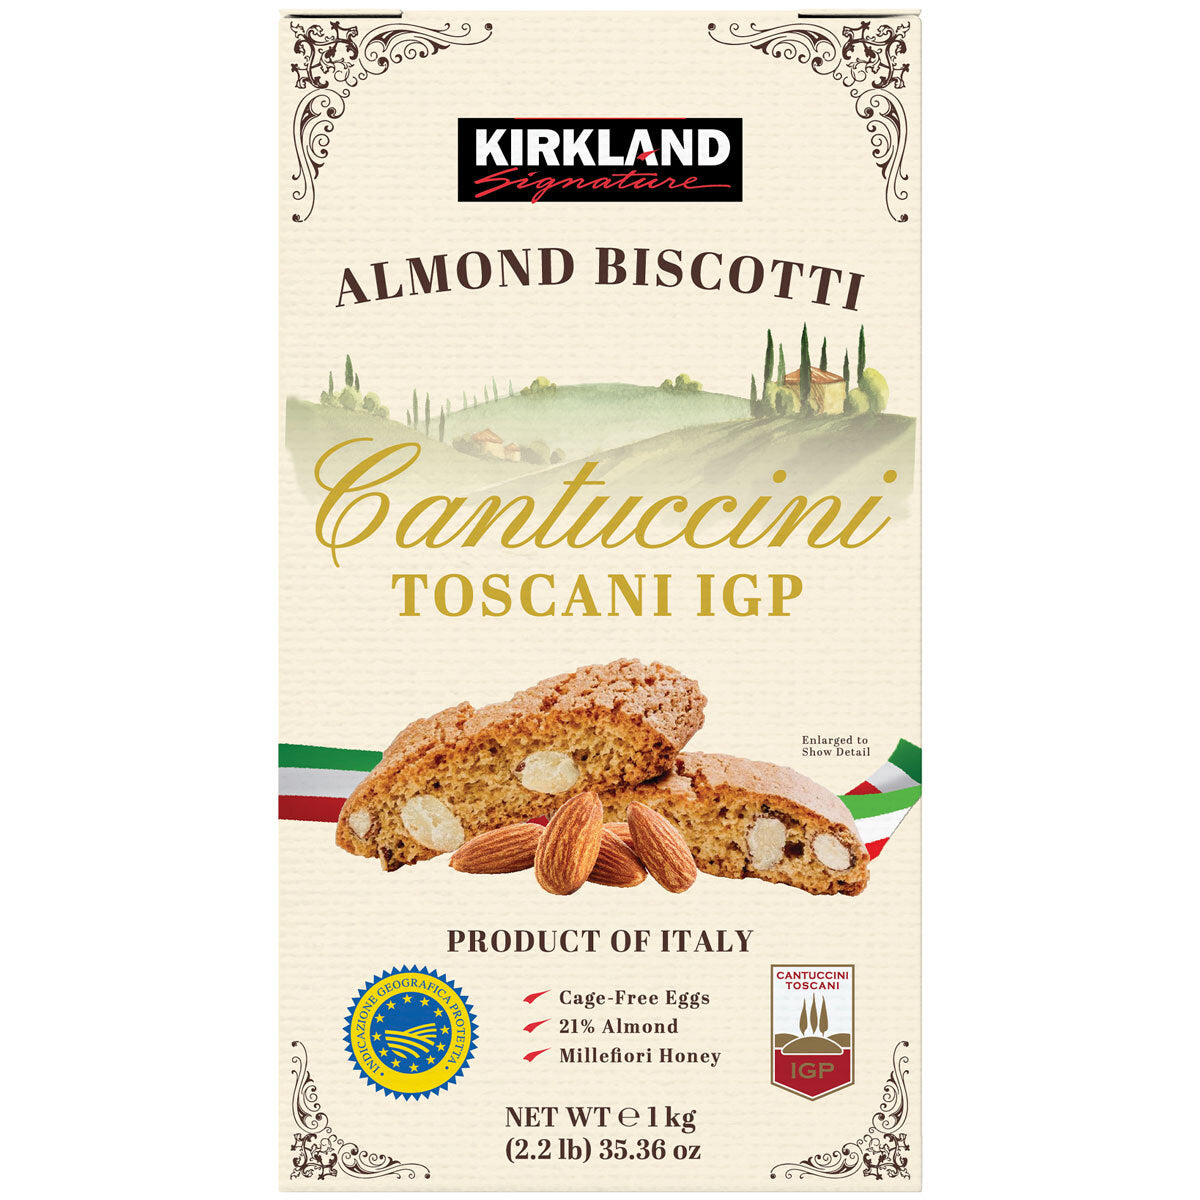 Kirkland Signature Cantuccini Toscani IGP Almond Biscotti - 1kg